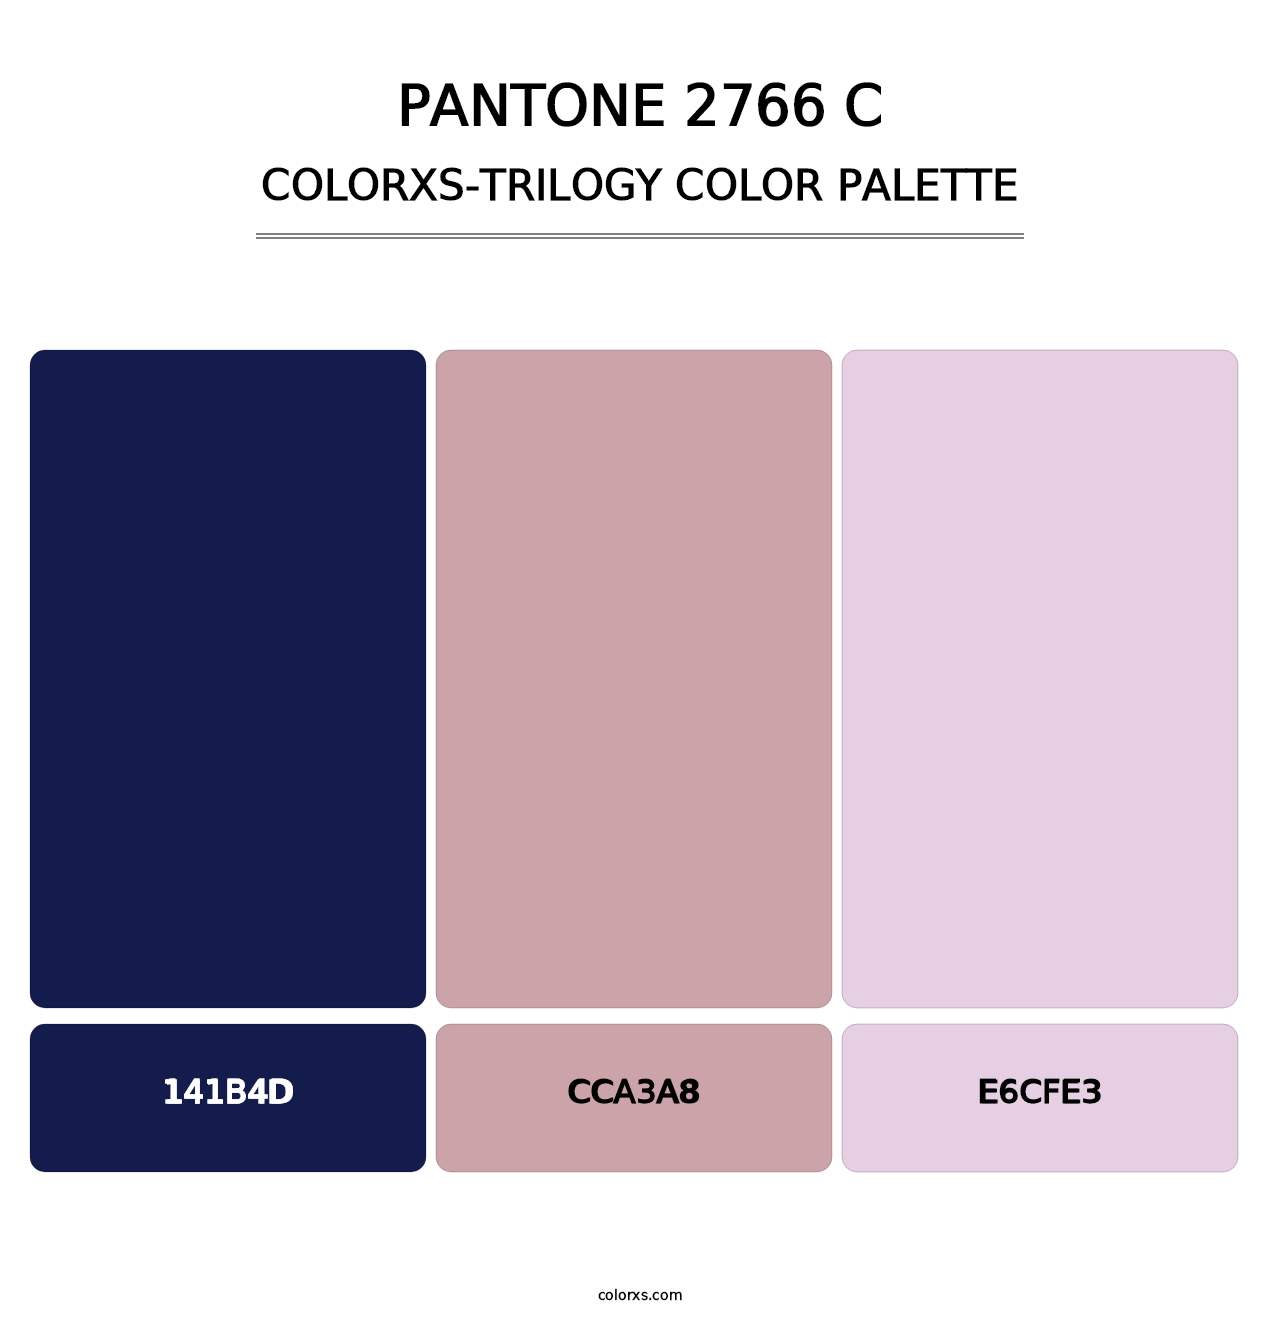 PANTONE 2766 C - Colorxs Trilogy Palette